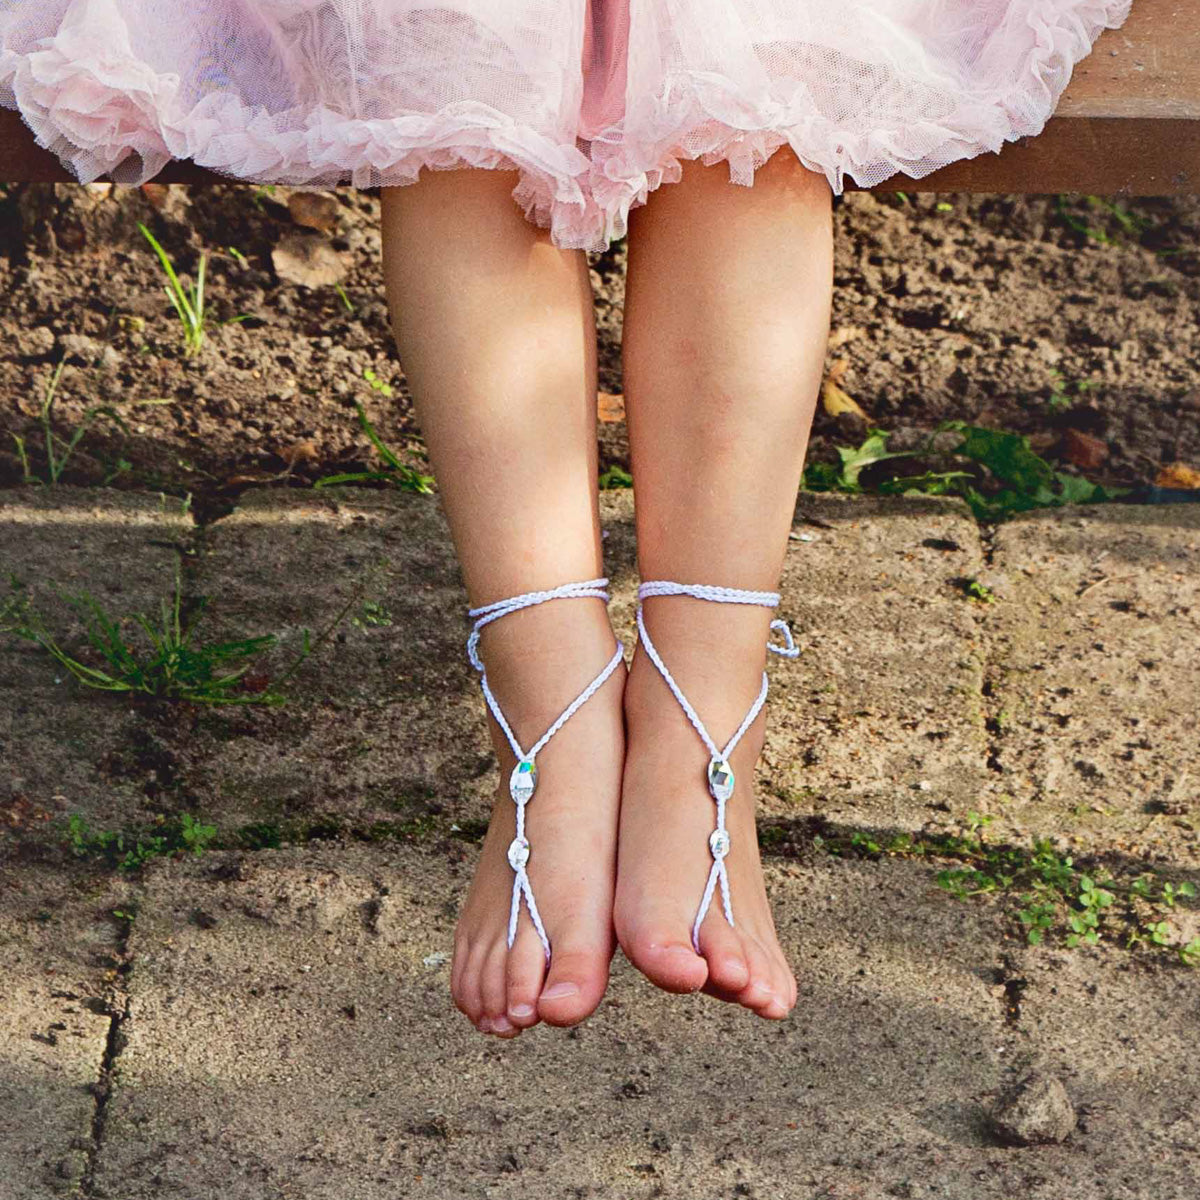 Daughters feet